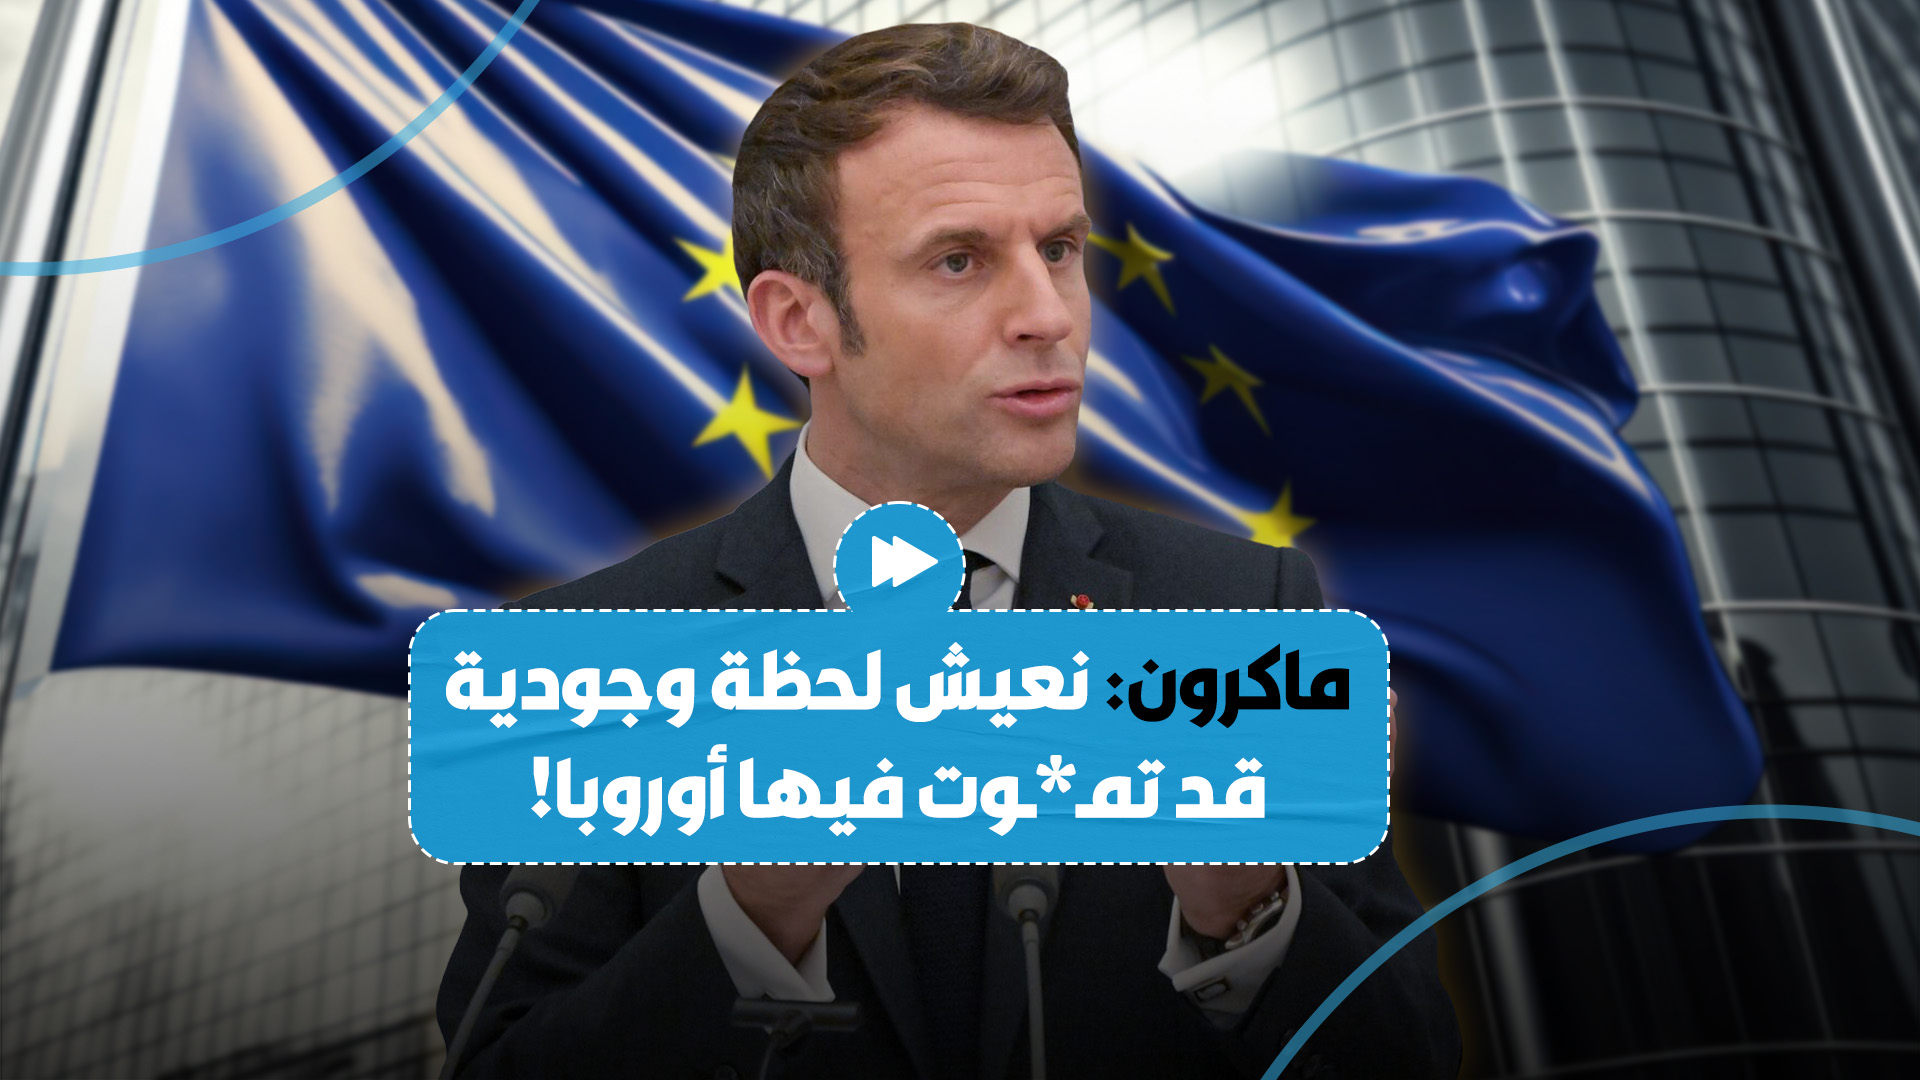 "أوروبا قد تمـ*ـوت"..الرئيس الفرنسي يحذّر من أن لدى أوروبا أعداء داخليين وخارجيين أكثر من أي وقت مضى